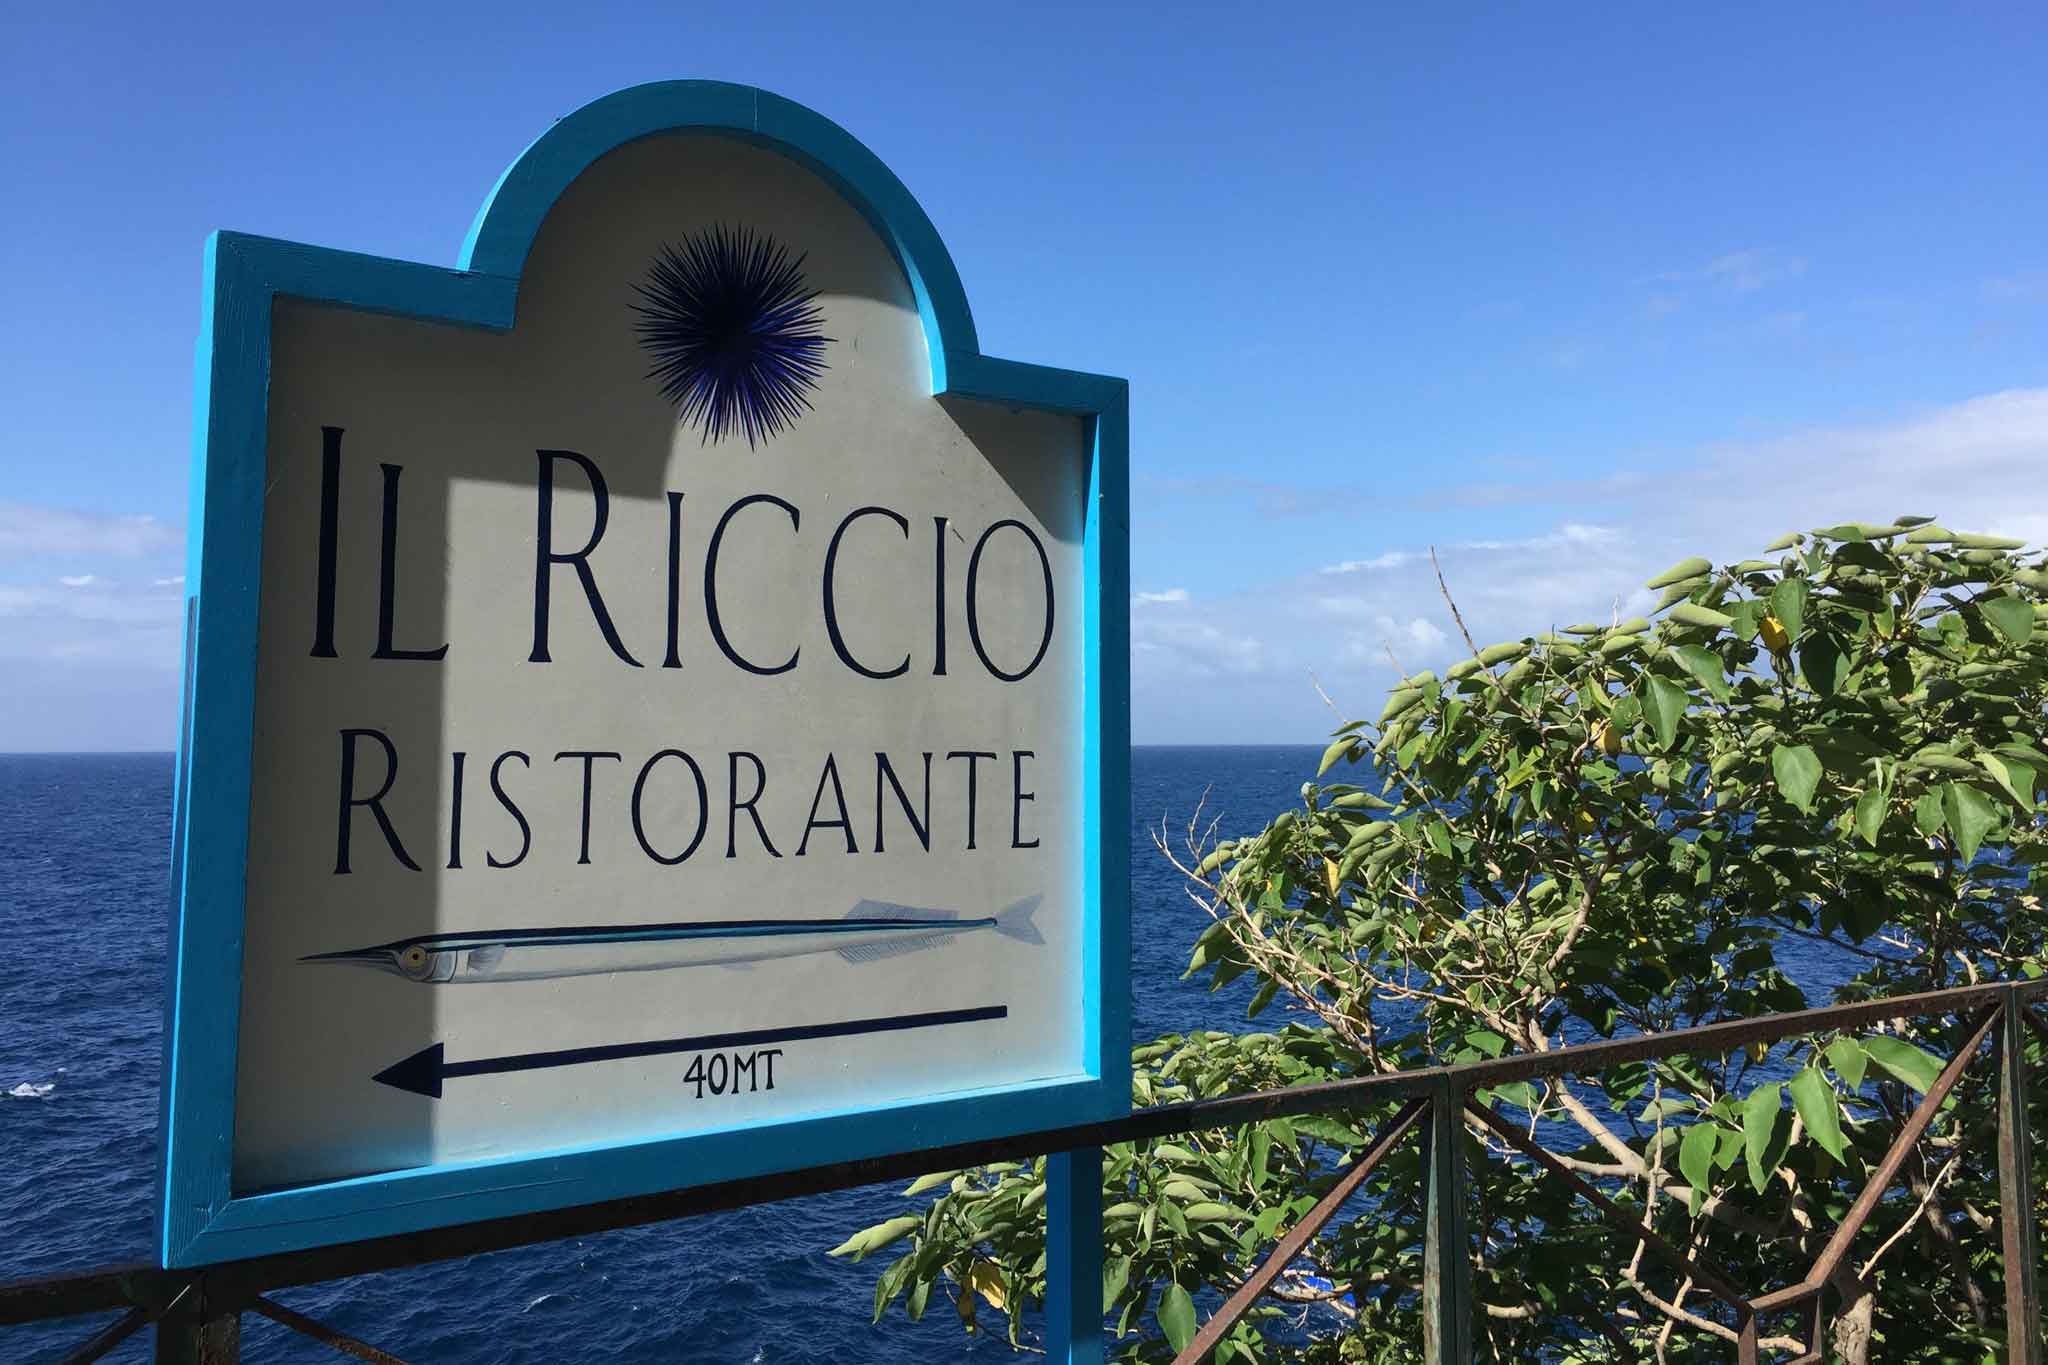 Il Riccio ristorante Capri